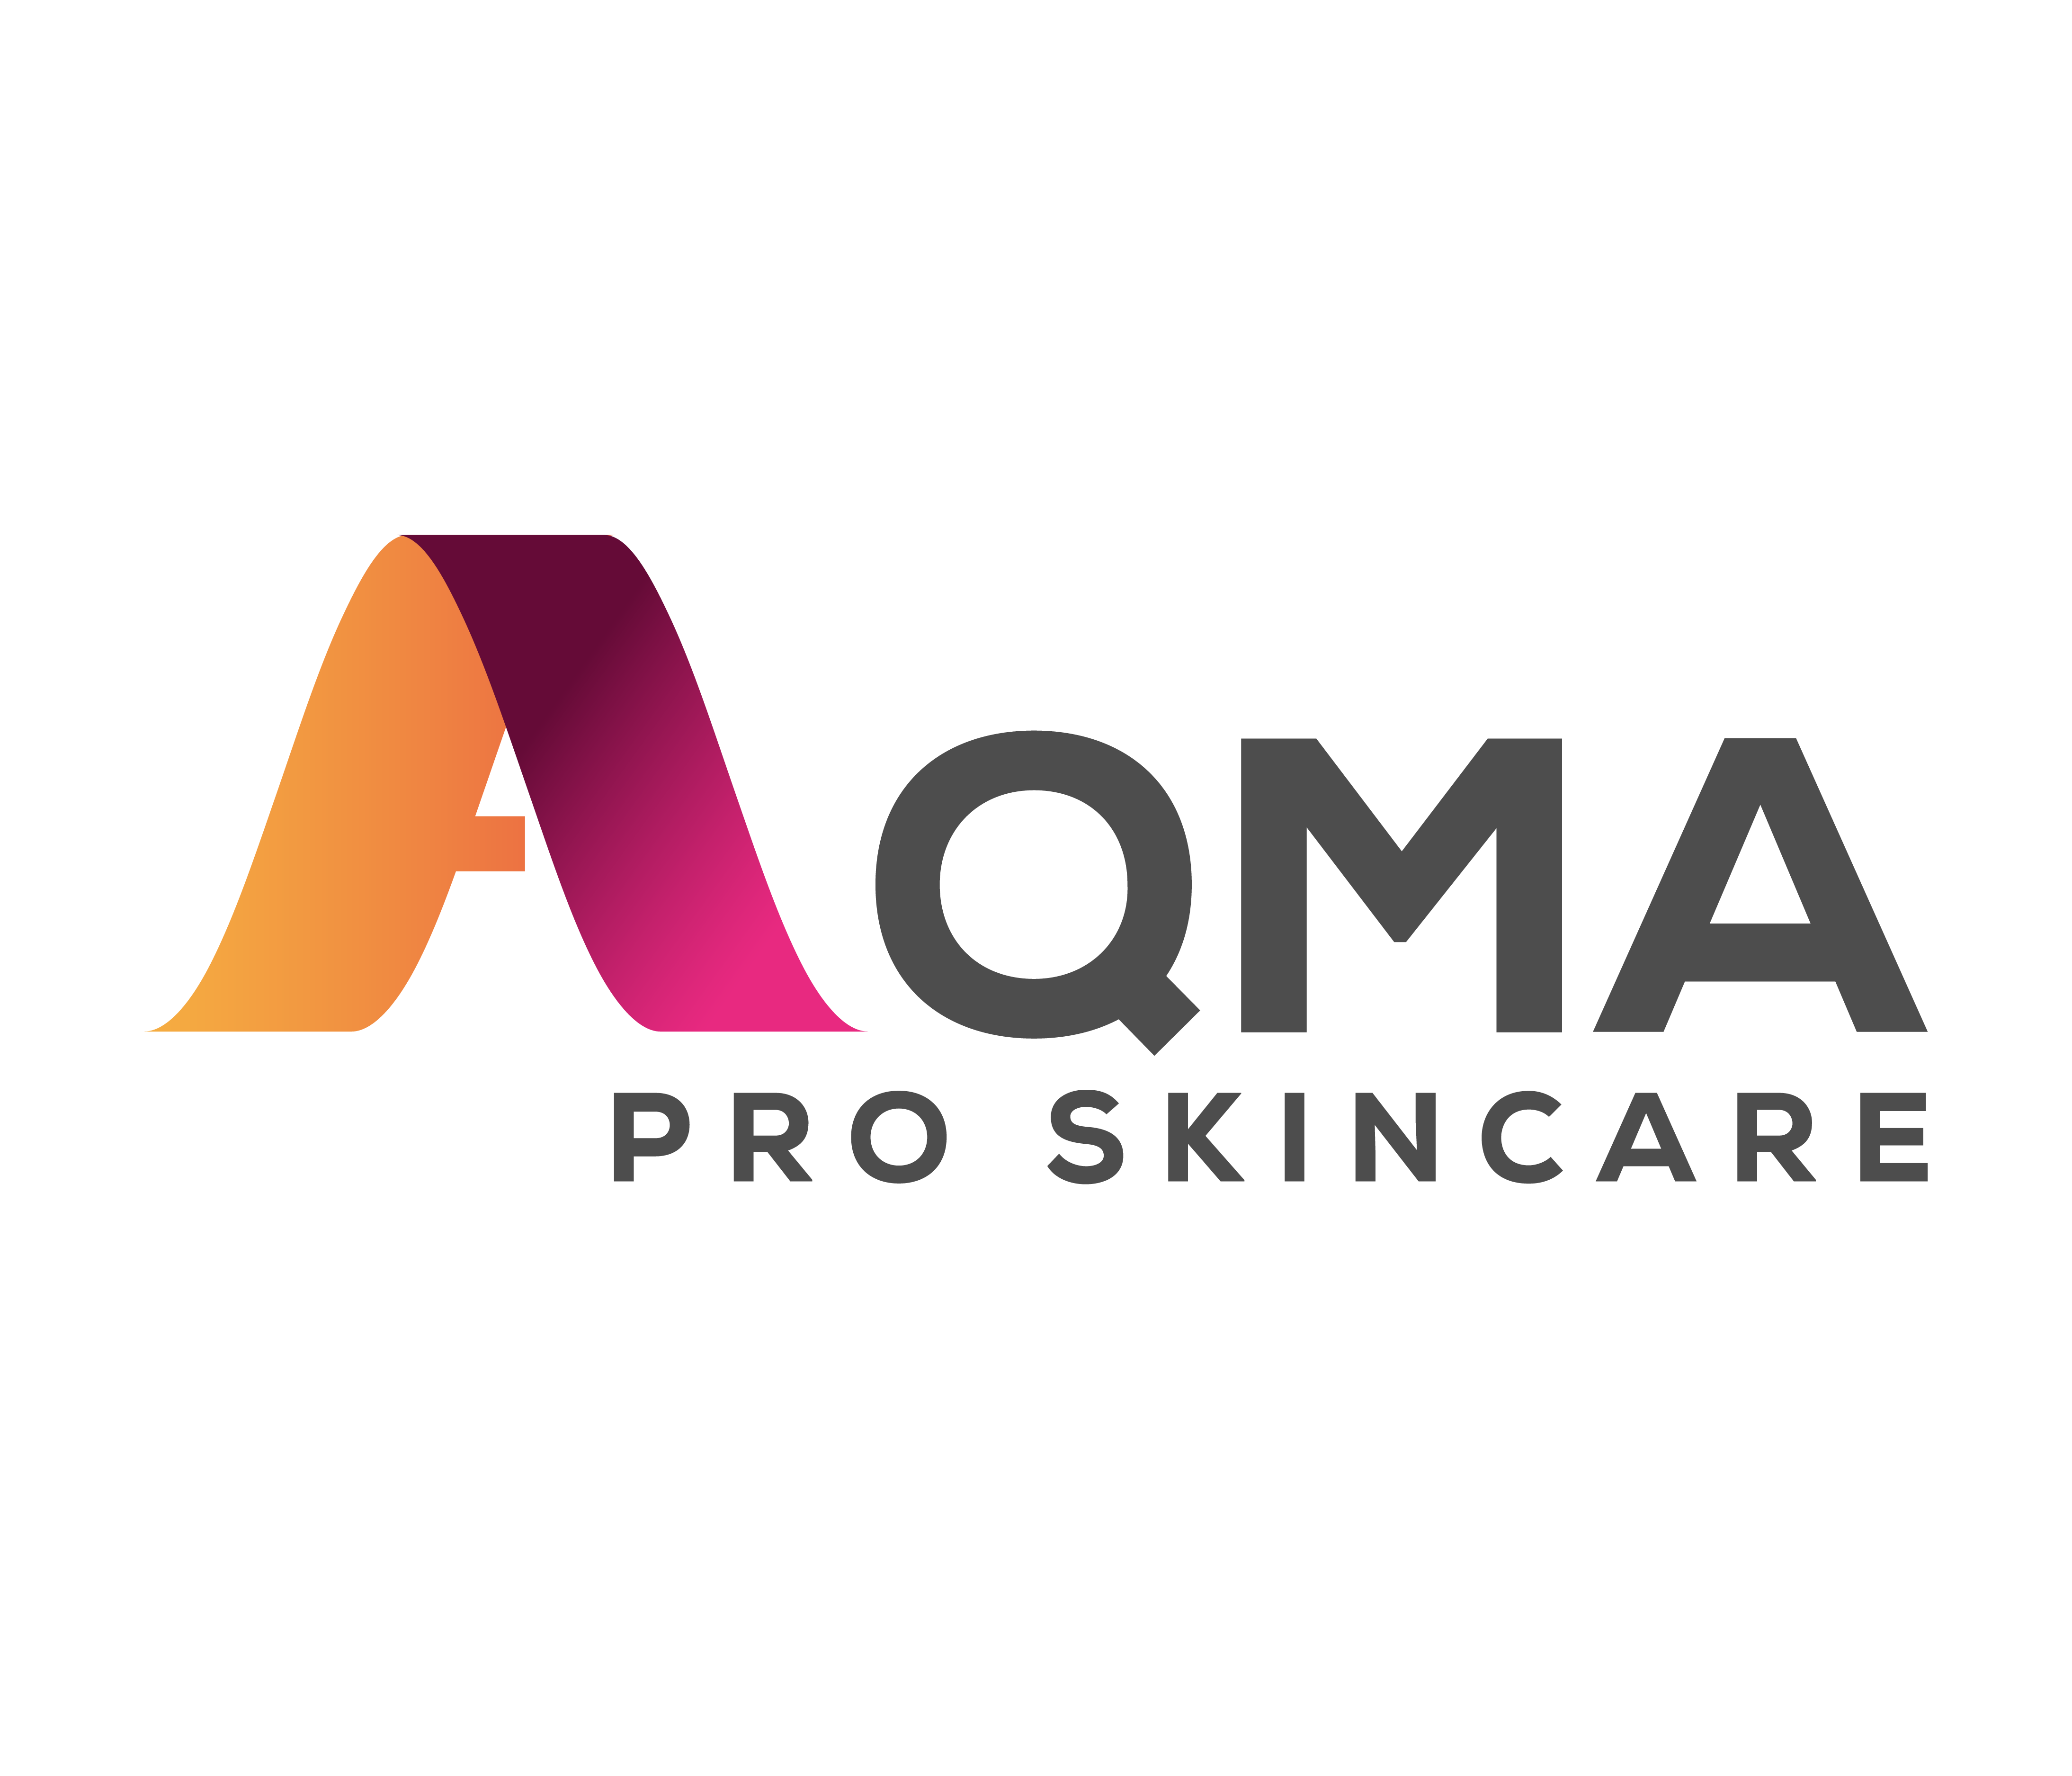 aqma pro skincare logo